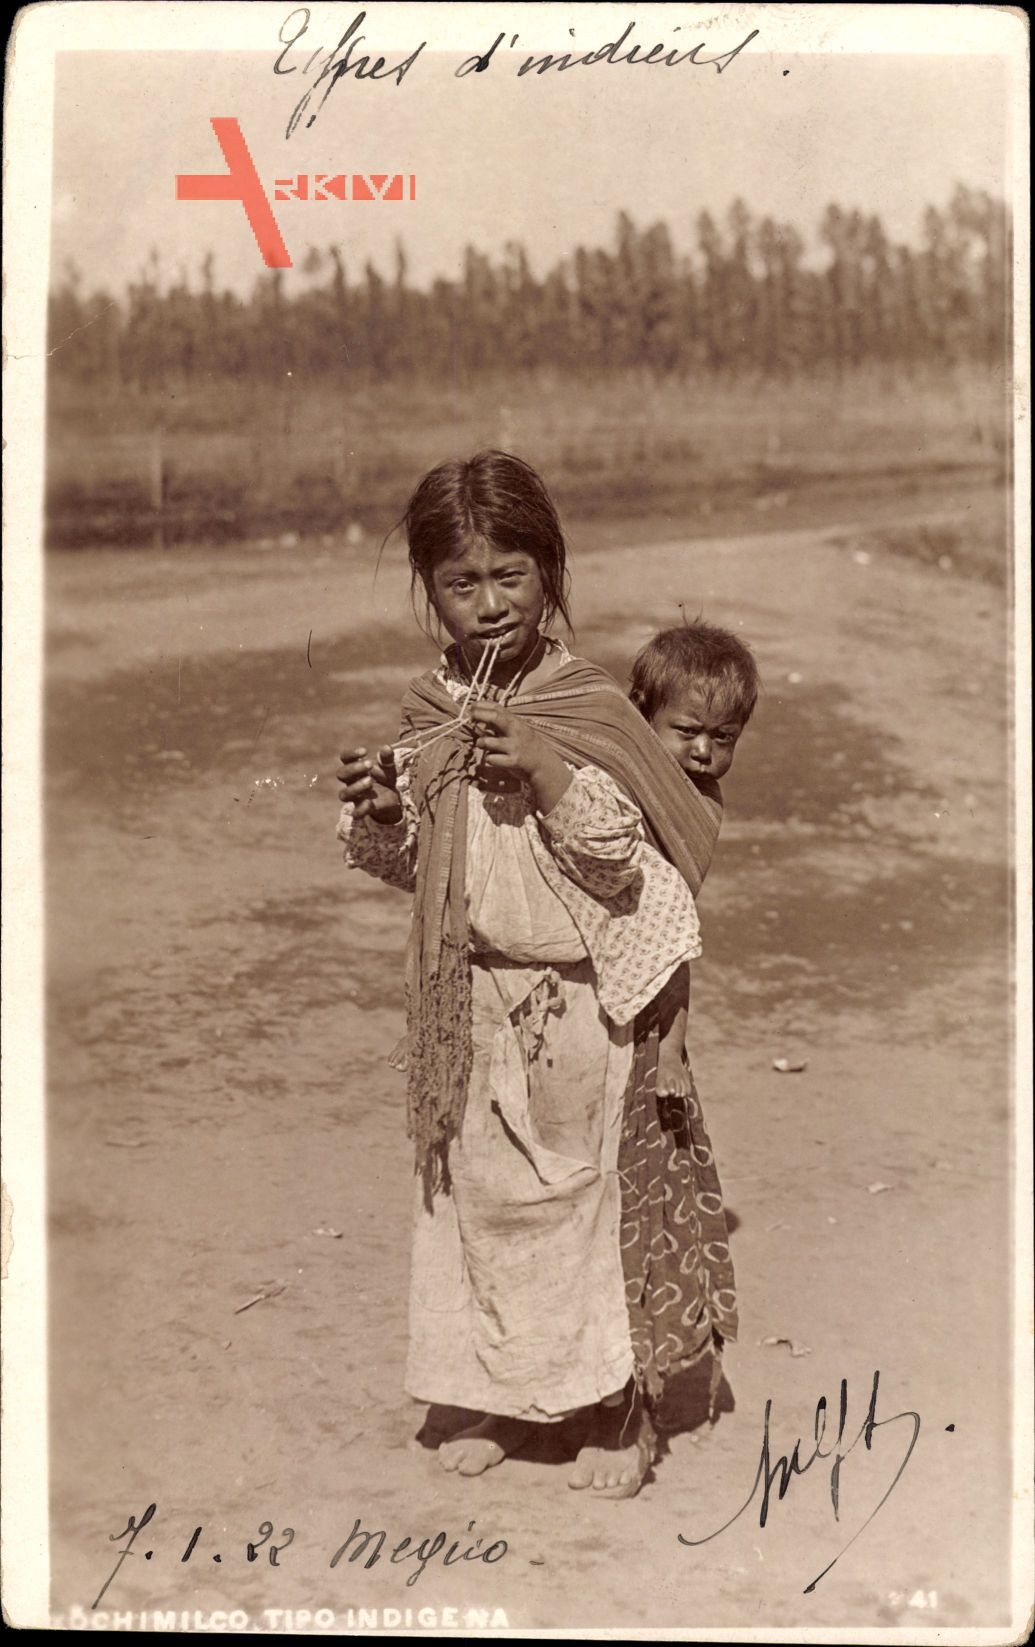 Xochimilco Mexico, Tipo indigena, Mexikaner, Kinder